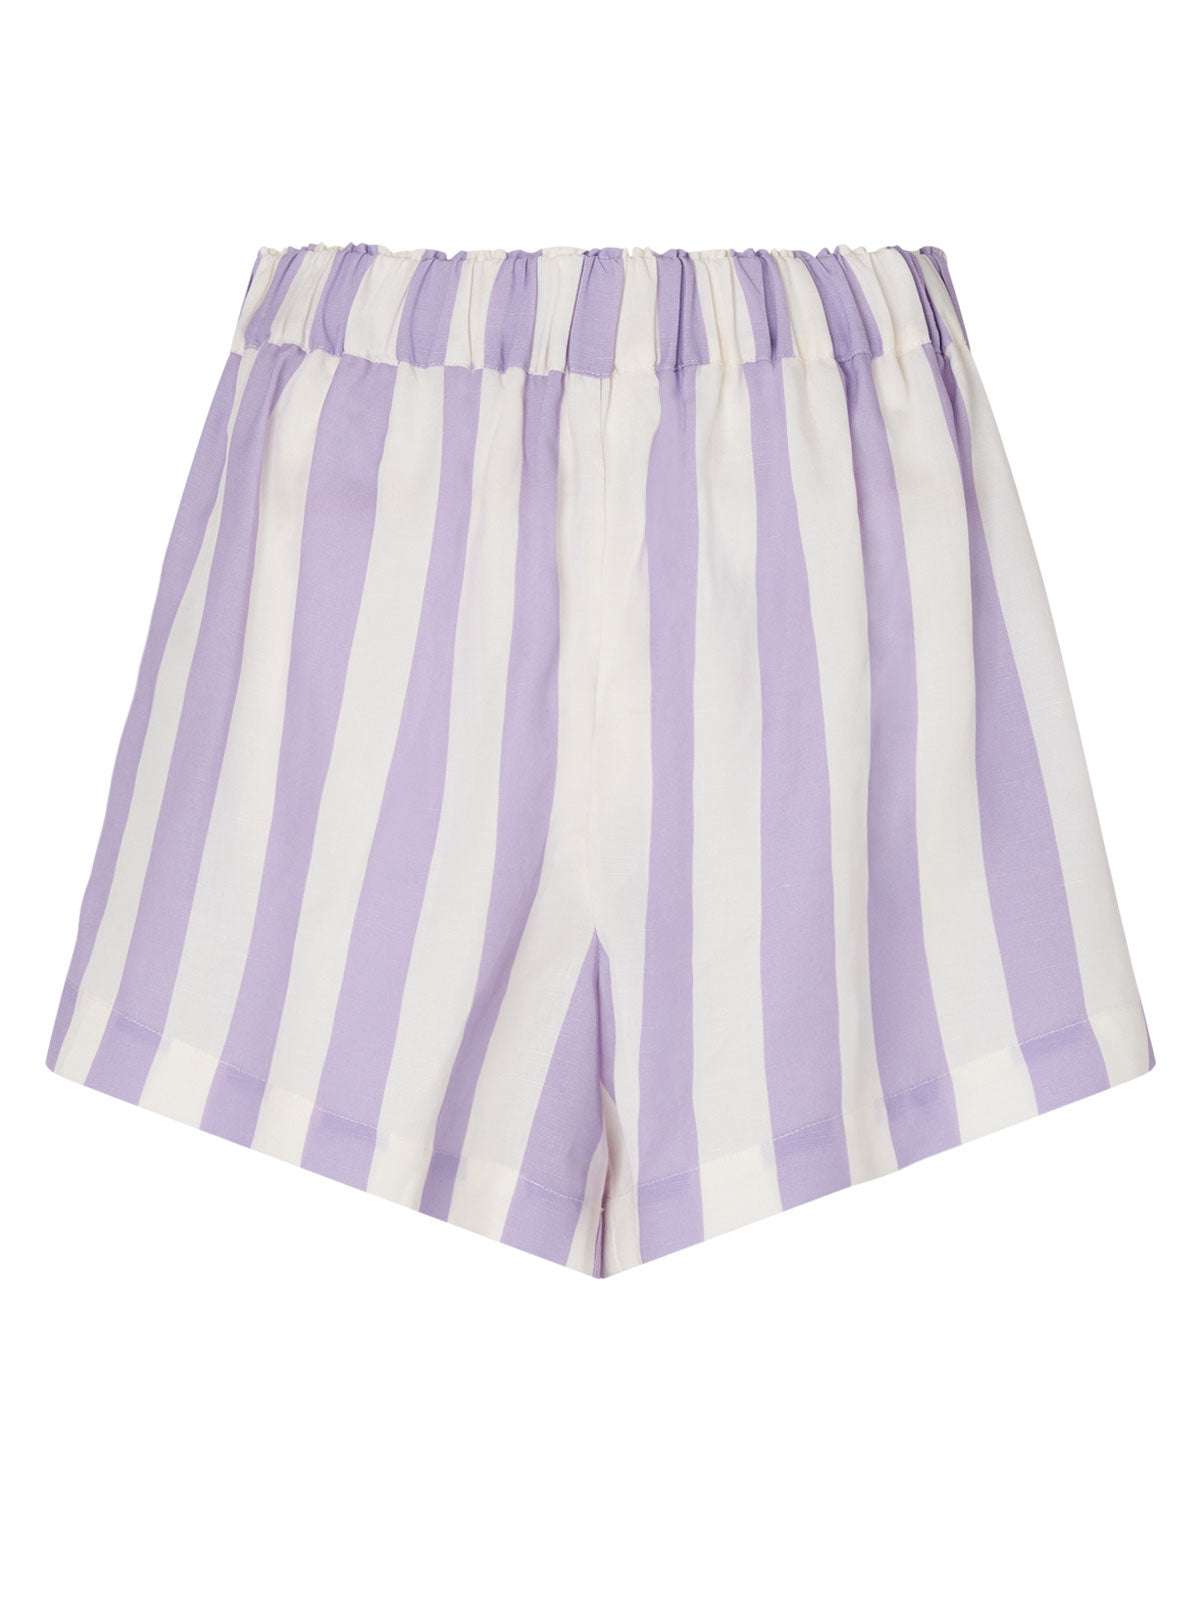 Lena Lilac Stripe Shorts By KITRI Studio